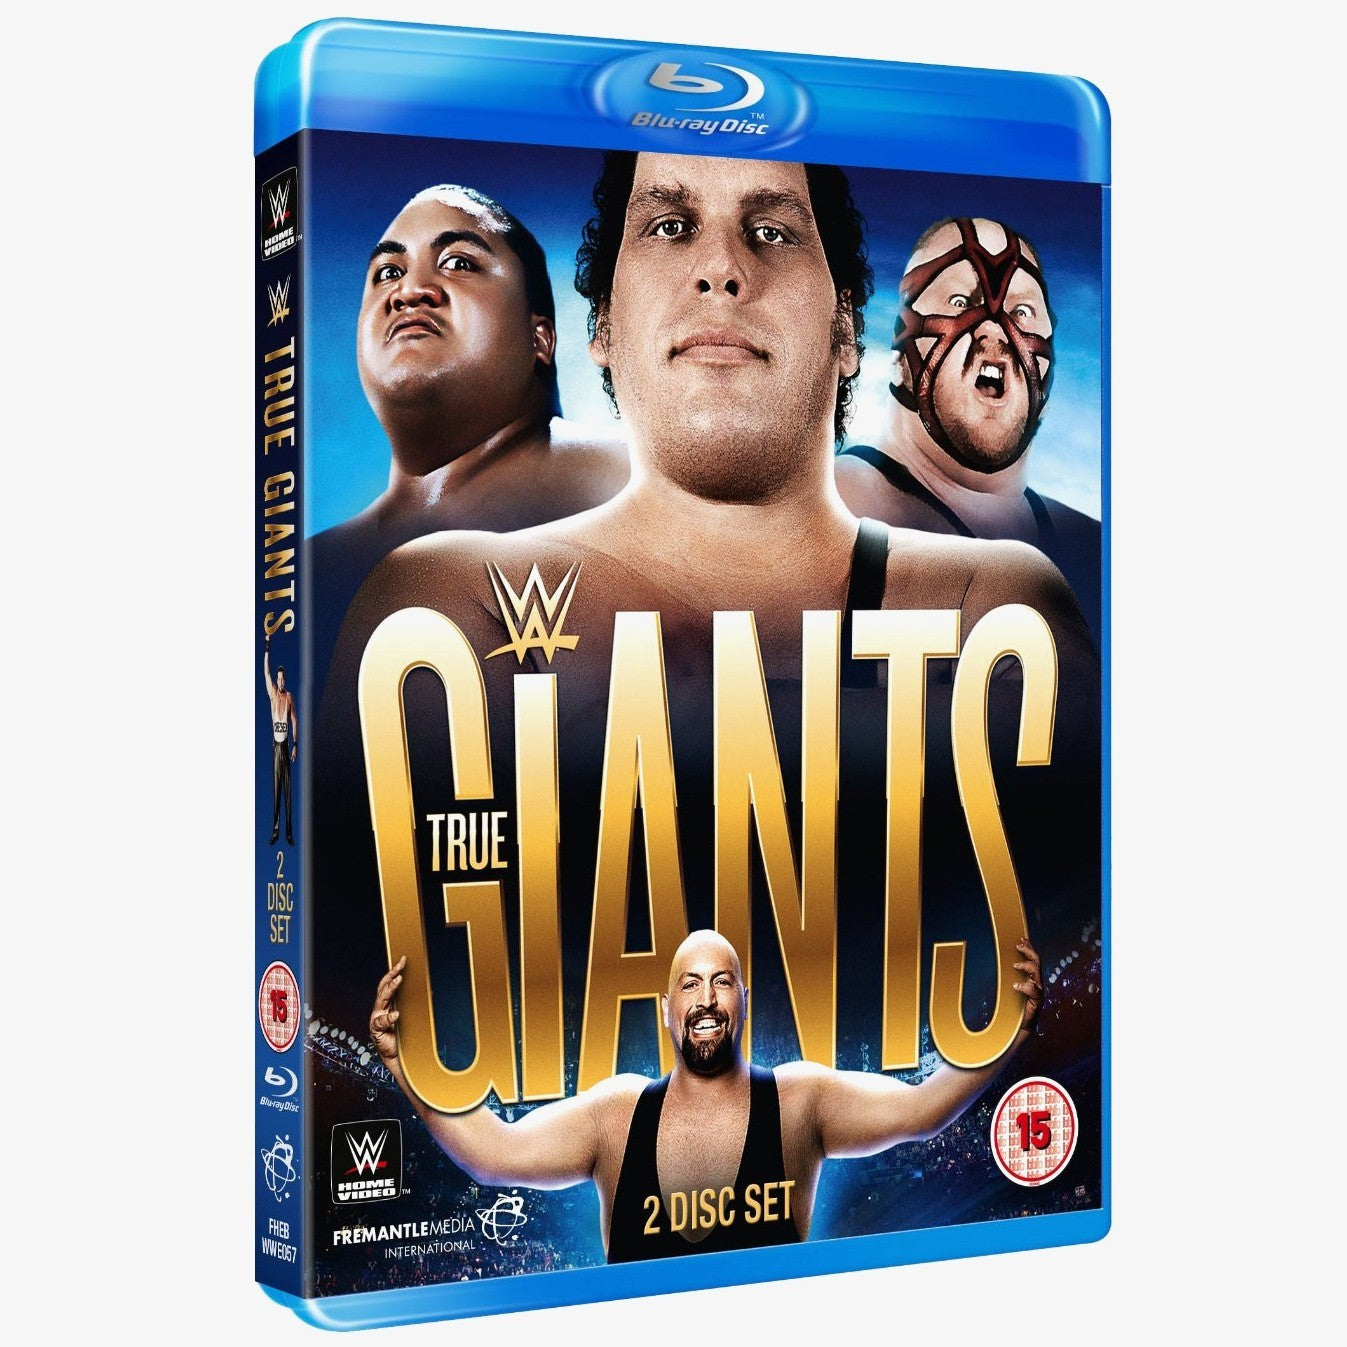 WWE - True Giants of Wrestling Blu-ray